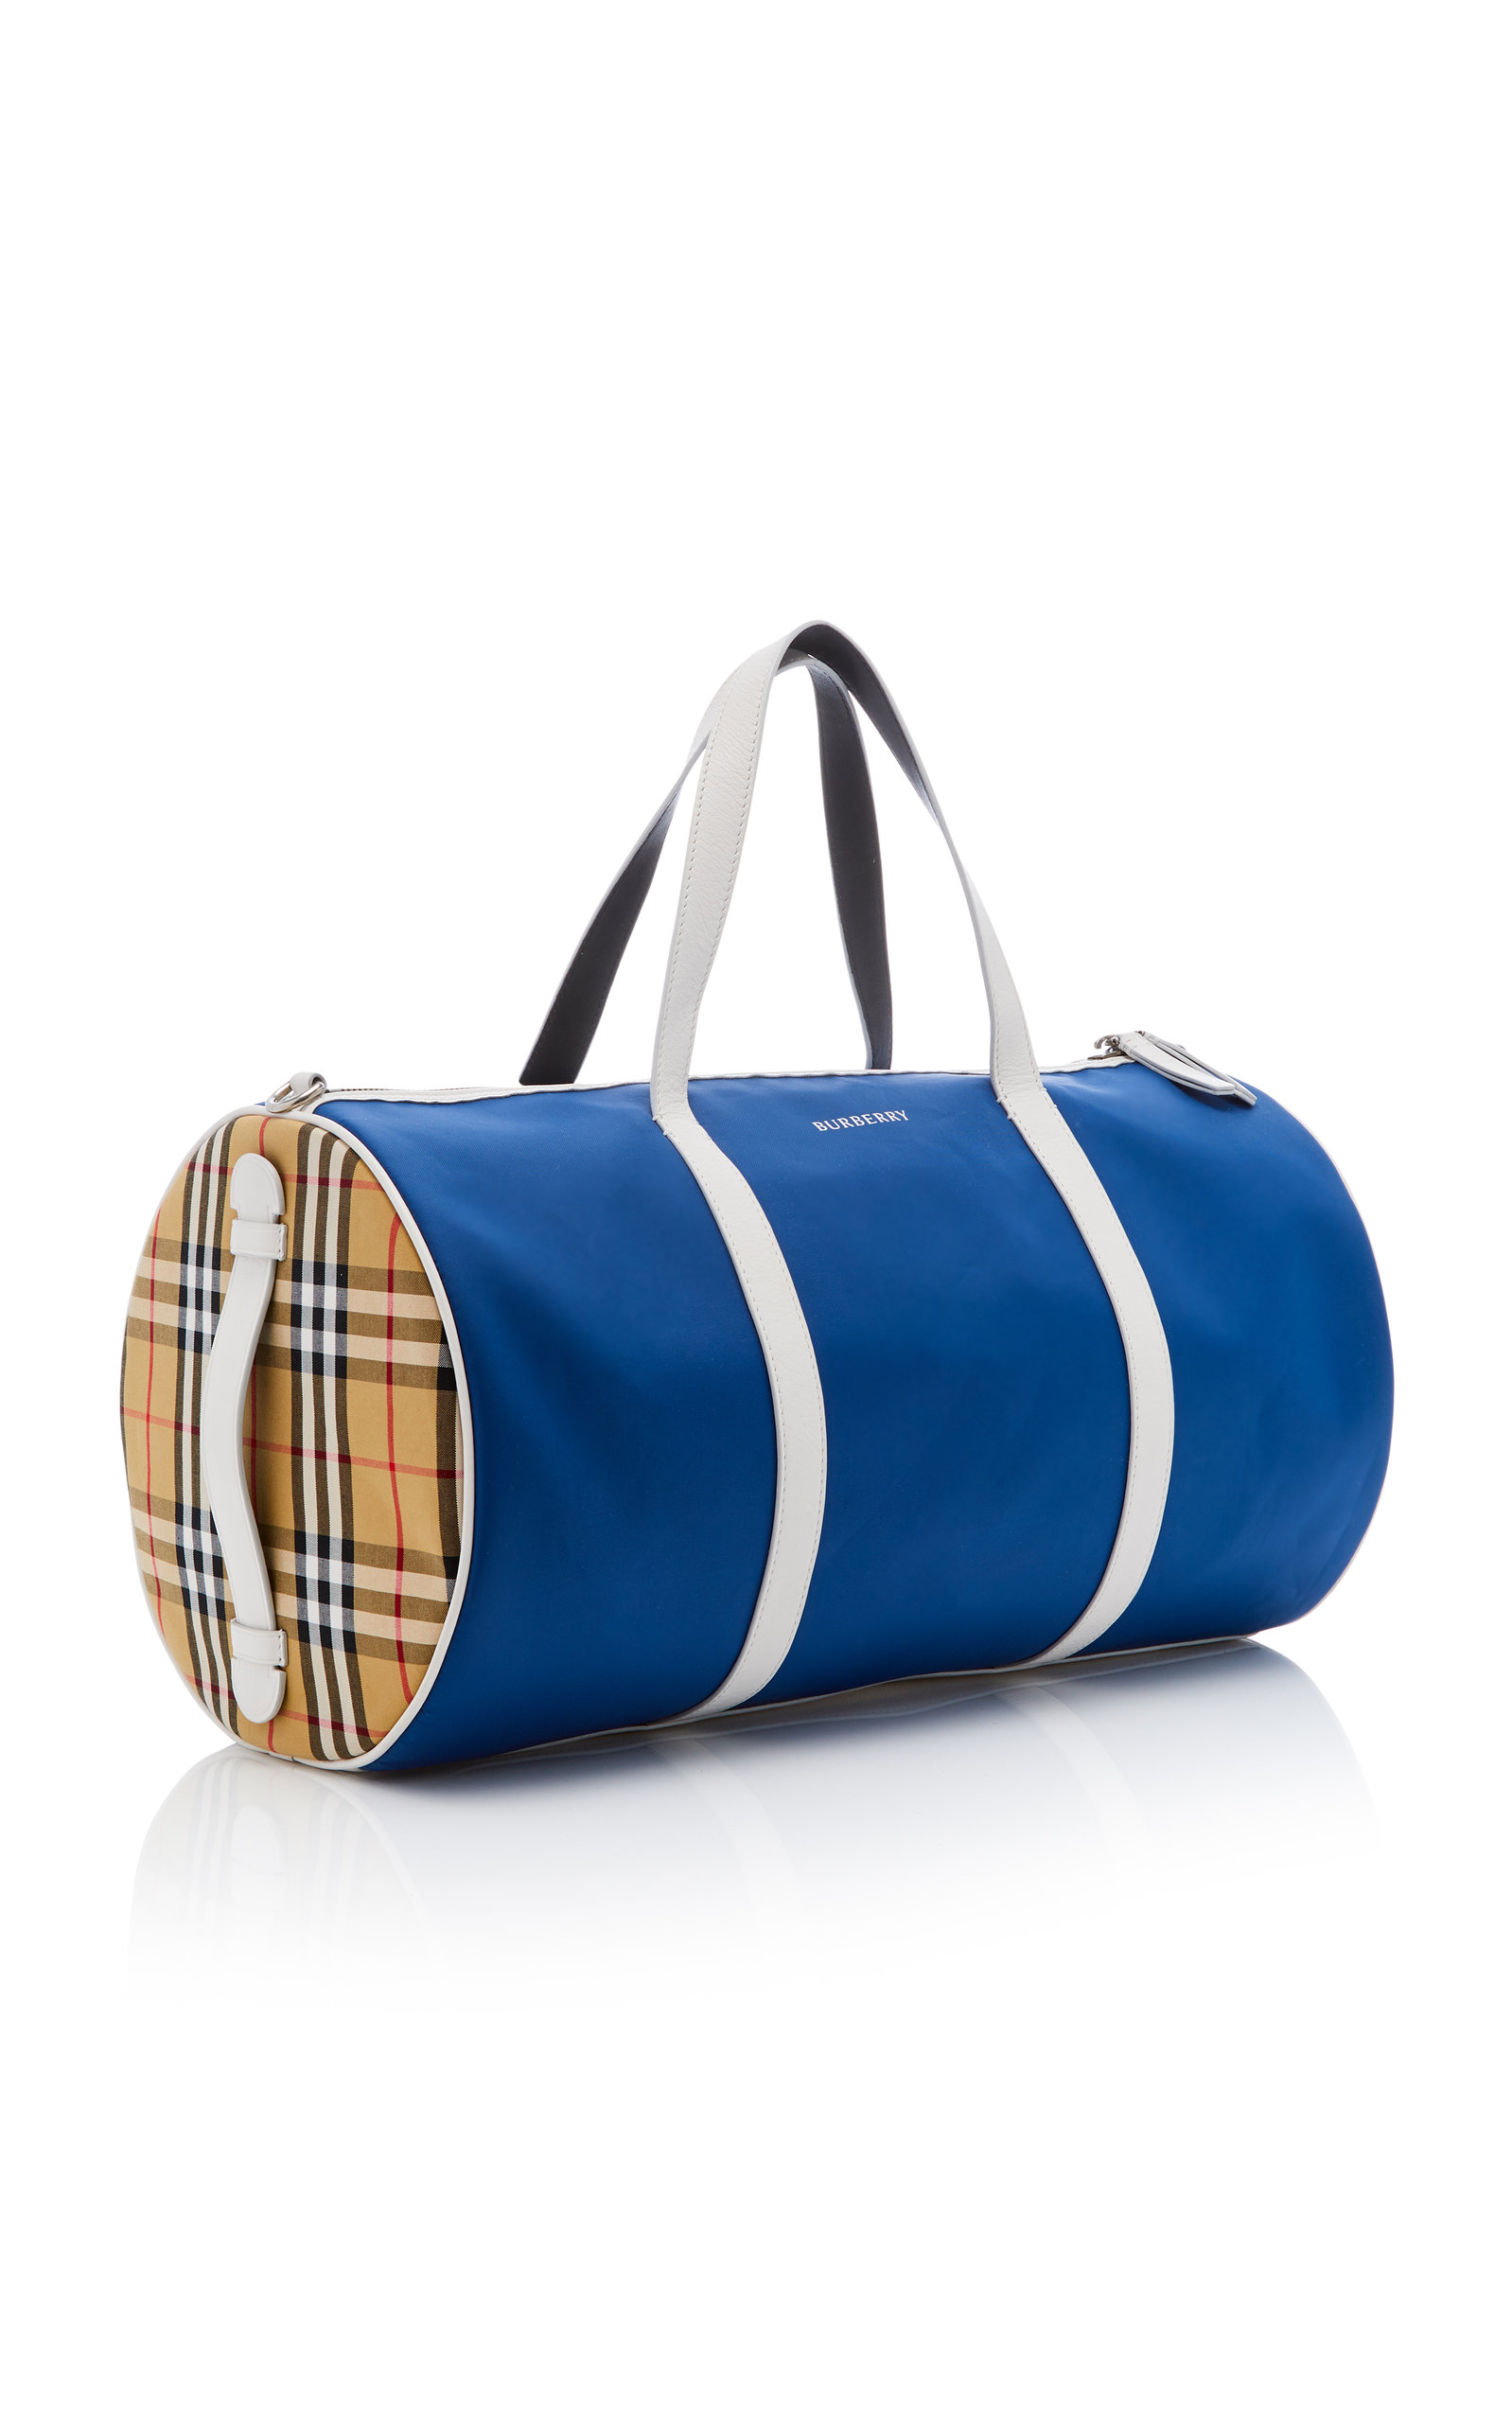 Kennedy Duffle Bag By Burberry | Moda 